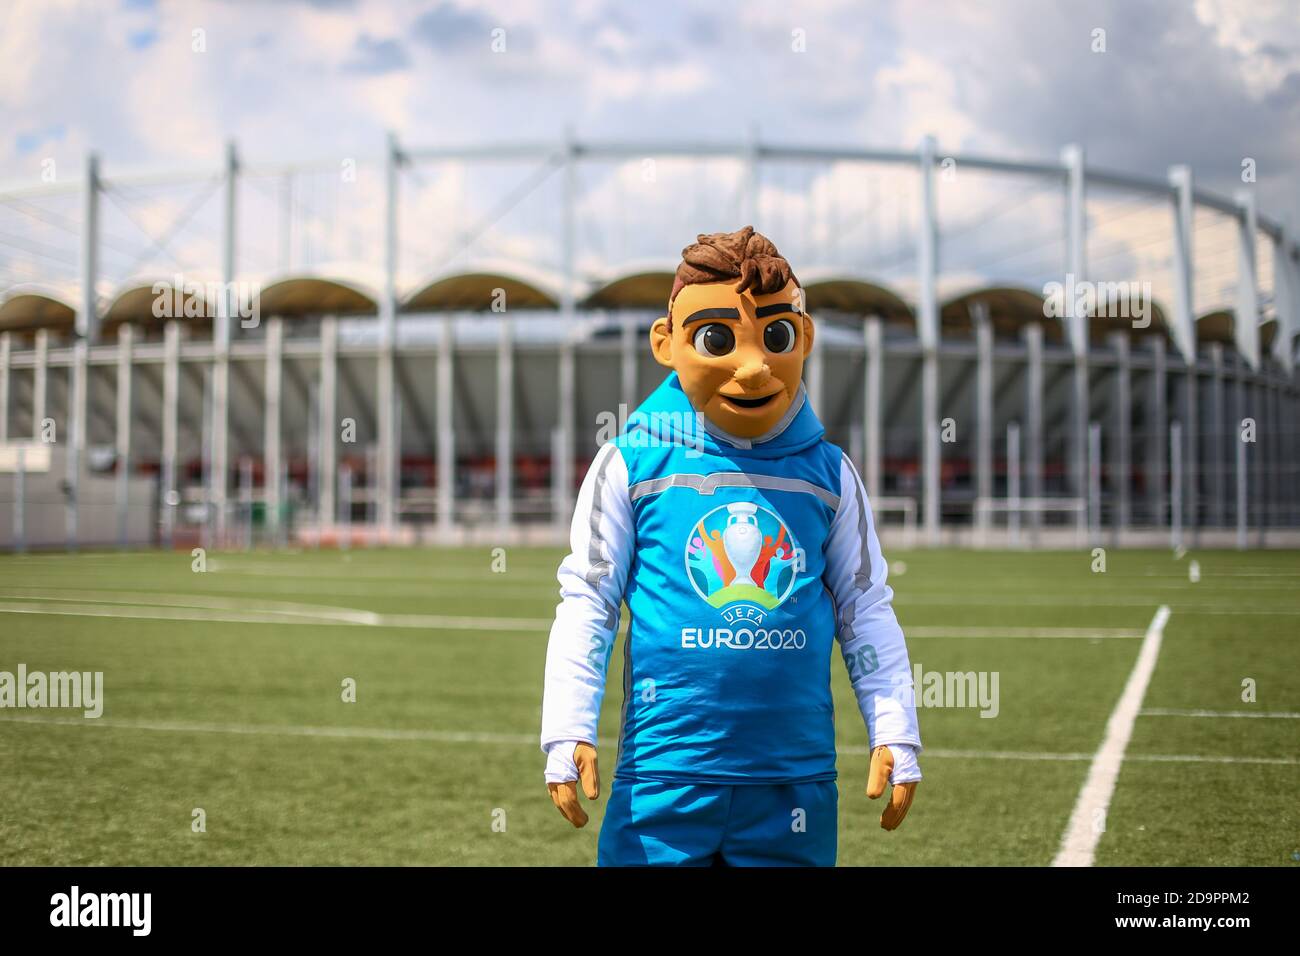 Bucarest, Romania - 24 maggio 2019: Una persona vestita come Skillzy, la mascotte ufficiale del torneo di calcio Euro 2020, al National Arena Stadium. Foto Stock